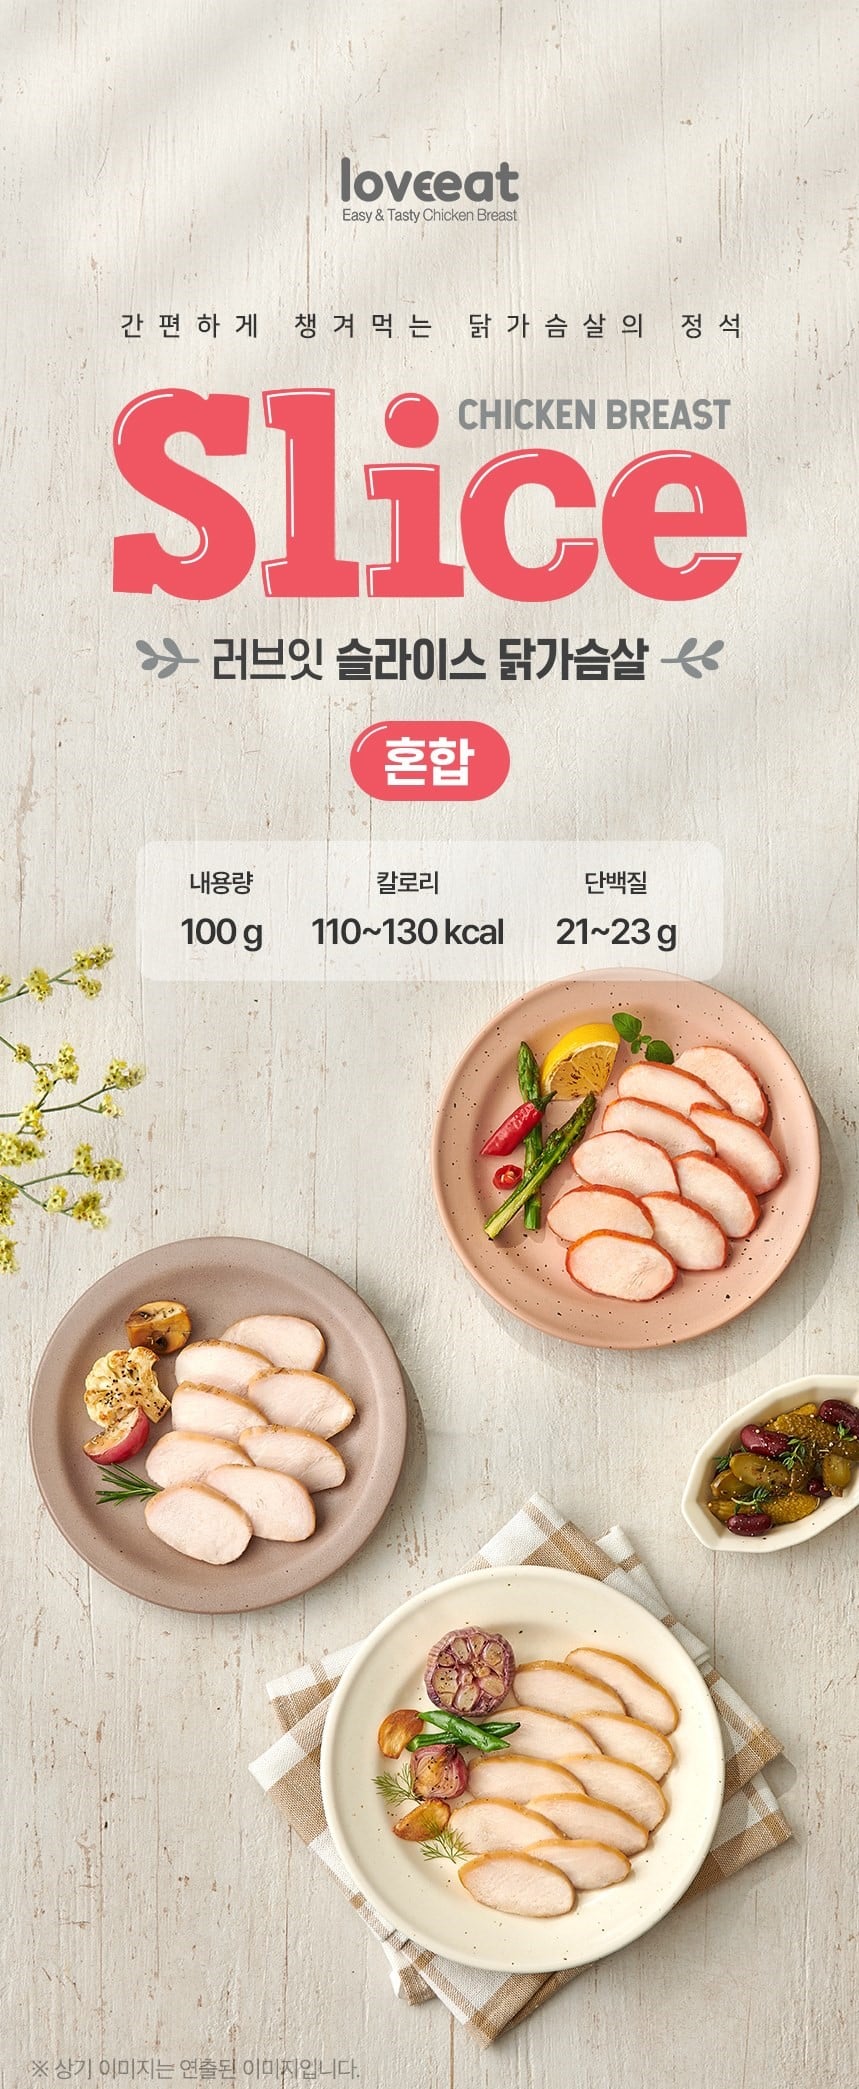 韓國食品-[Loveeat] Slice Chicken Breast [Smoked] 100g